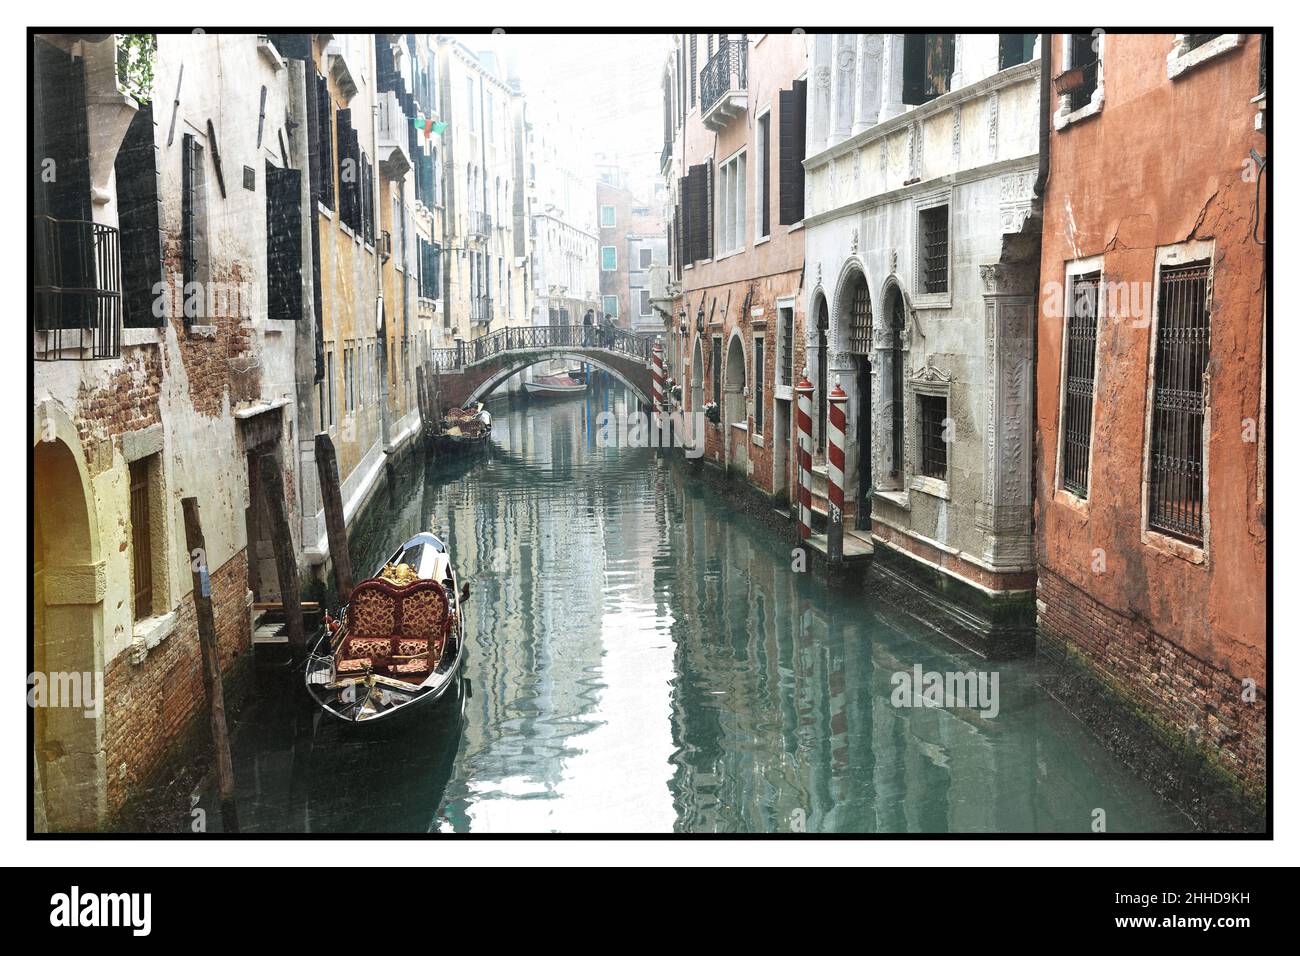 Romantici canali veneziani. Antiche stradine di Venezia. Foto dai toni seppia in stile retrò. Italia Foto Stock